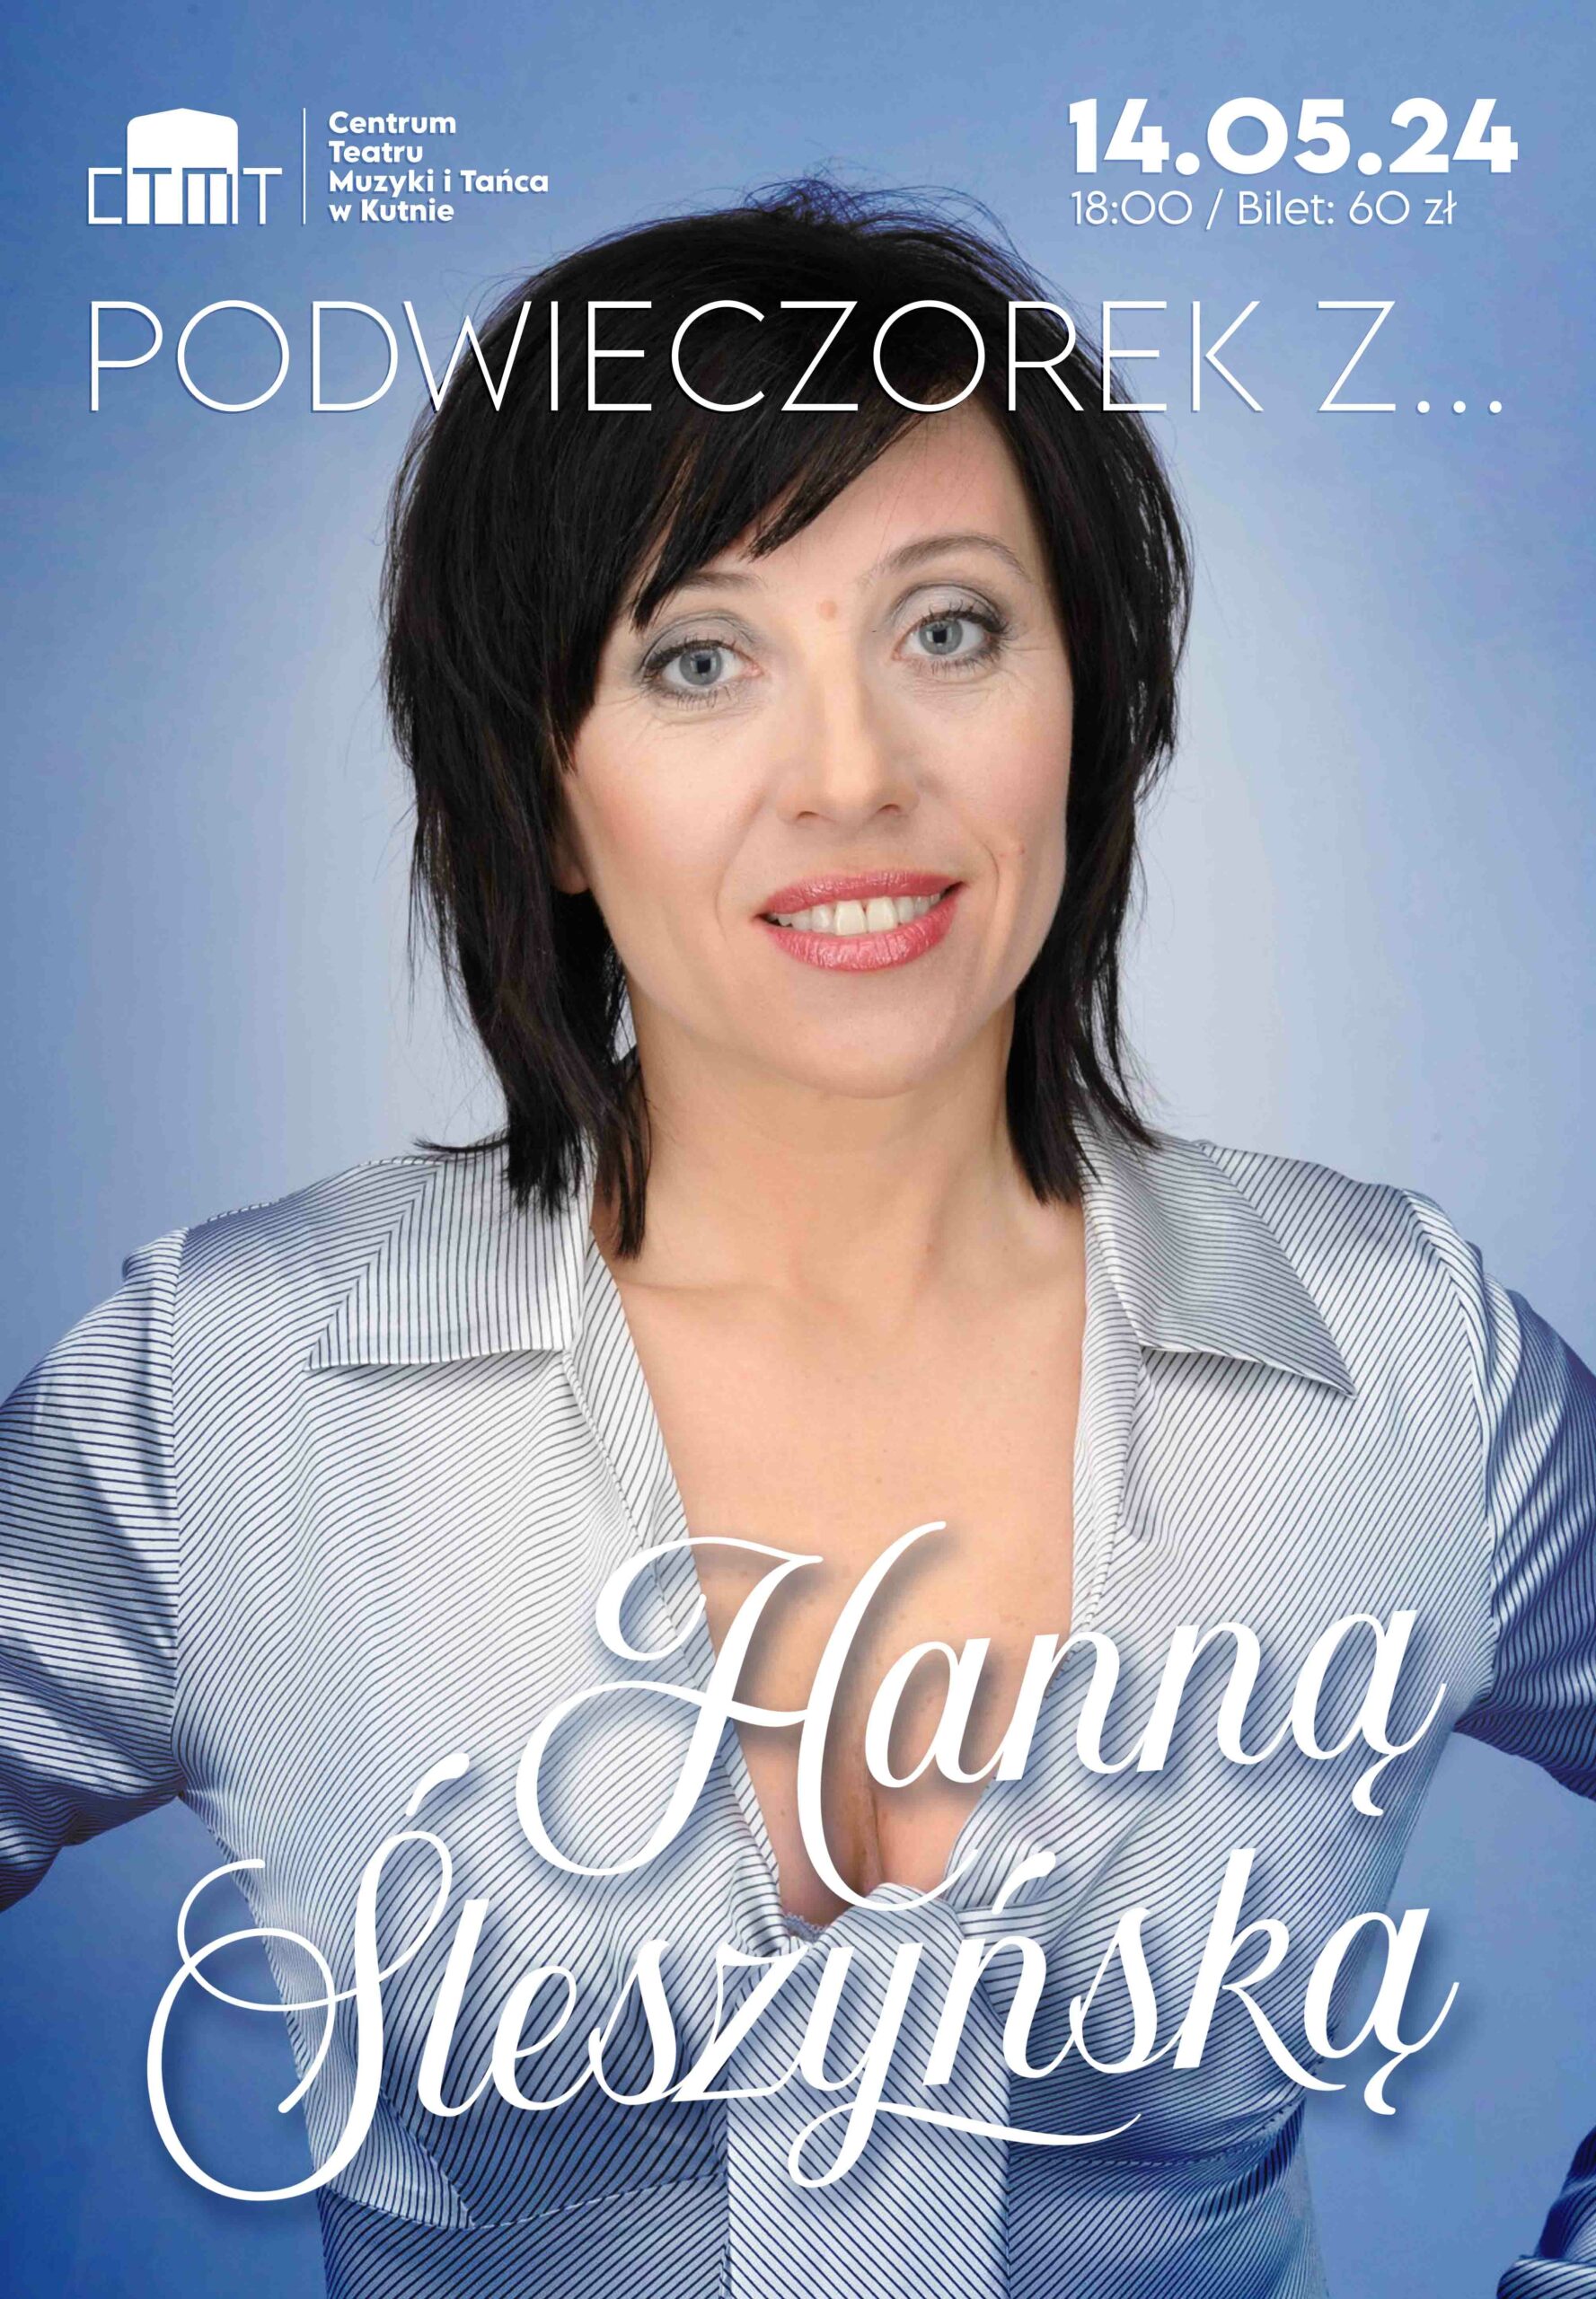 Plakat promujący wydarzenie Podwieczorek z… Hanną Śleszyńską